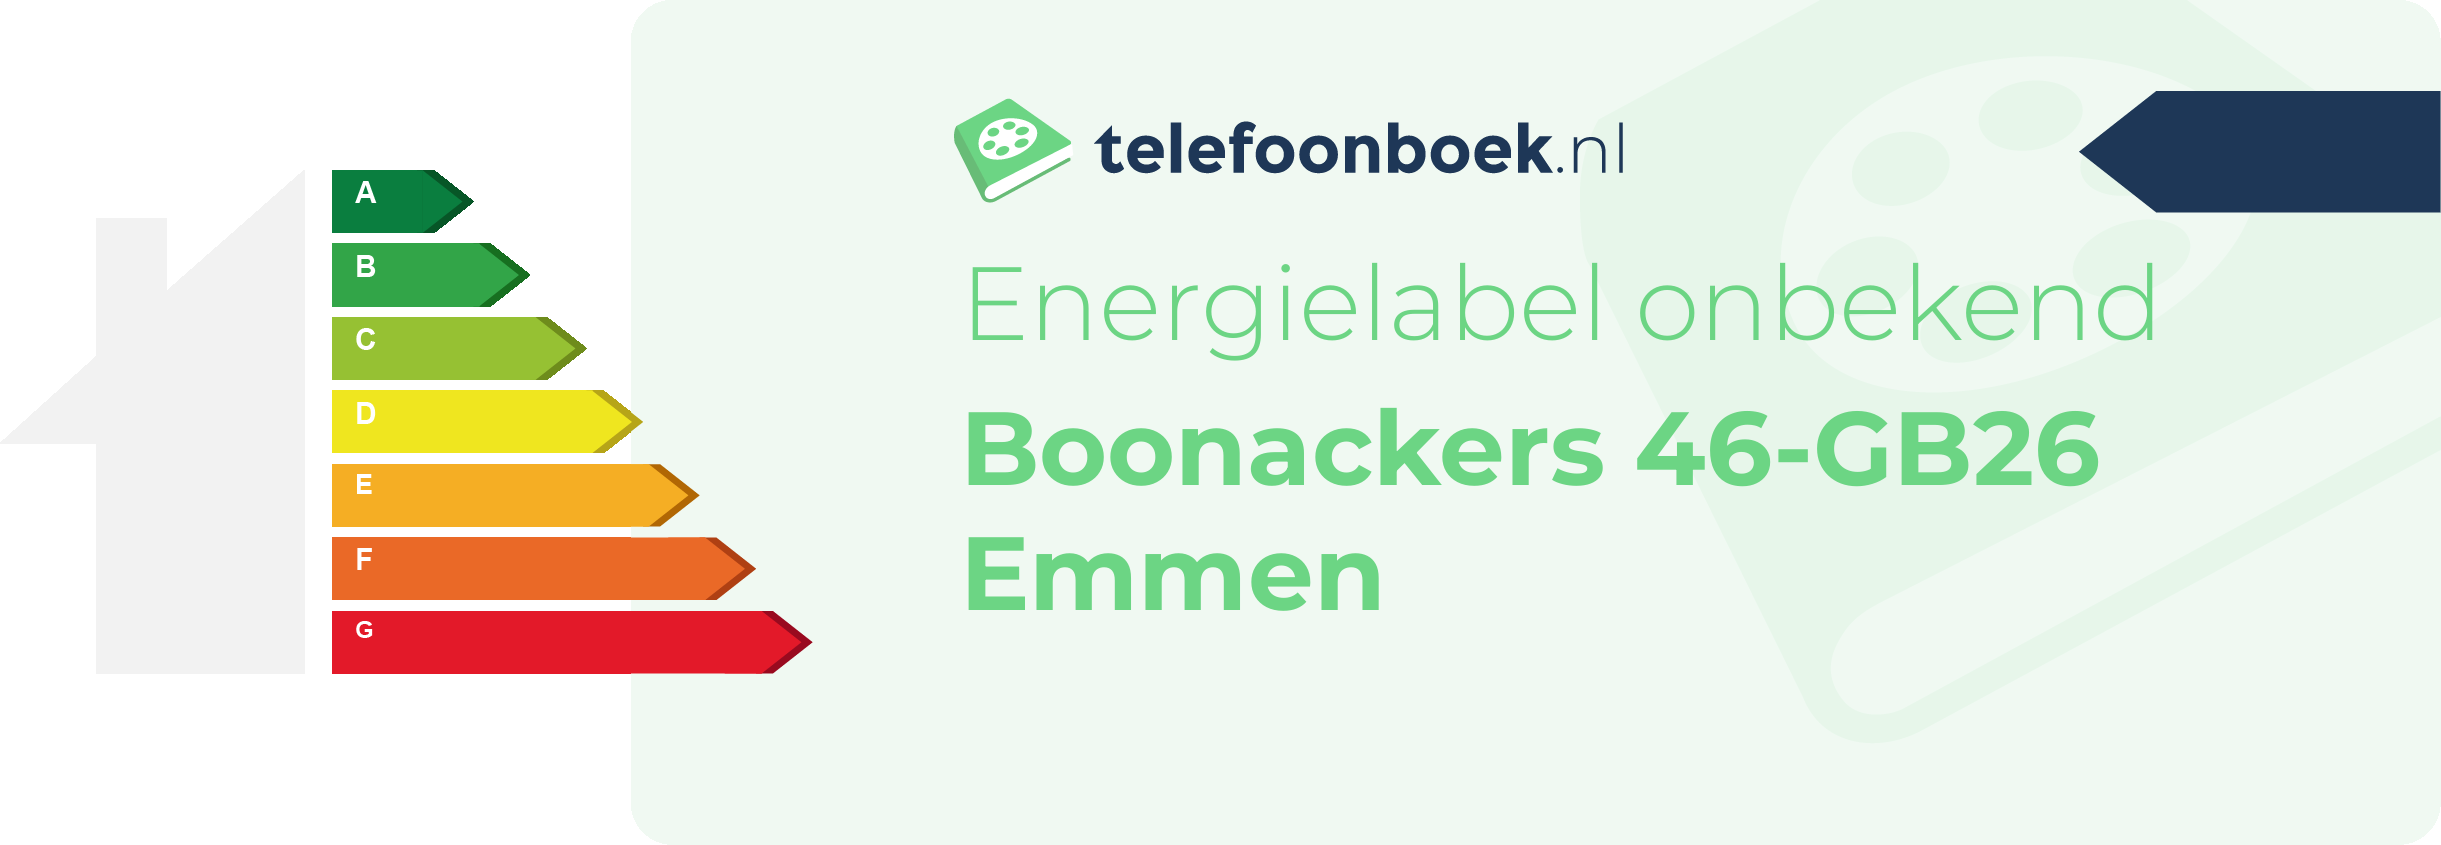 Energielabel Boonackers 46-GB26 Emmen